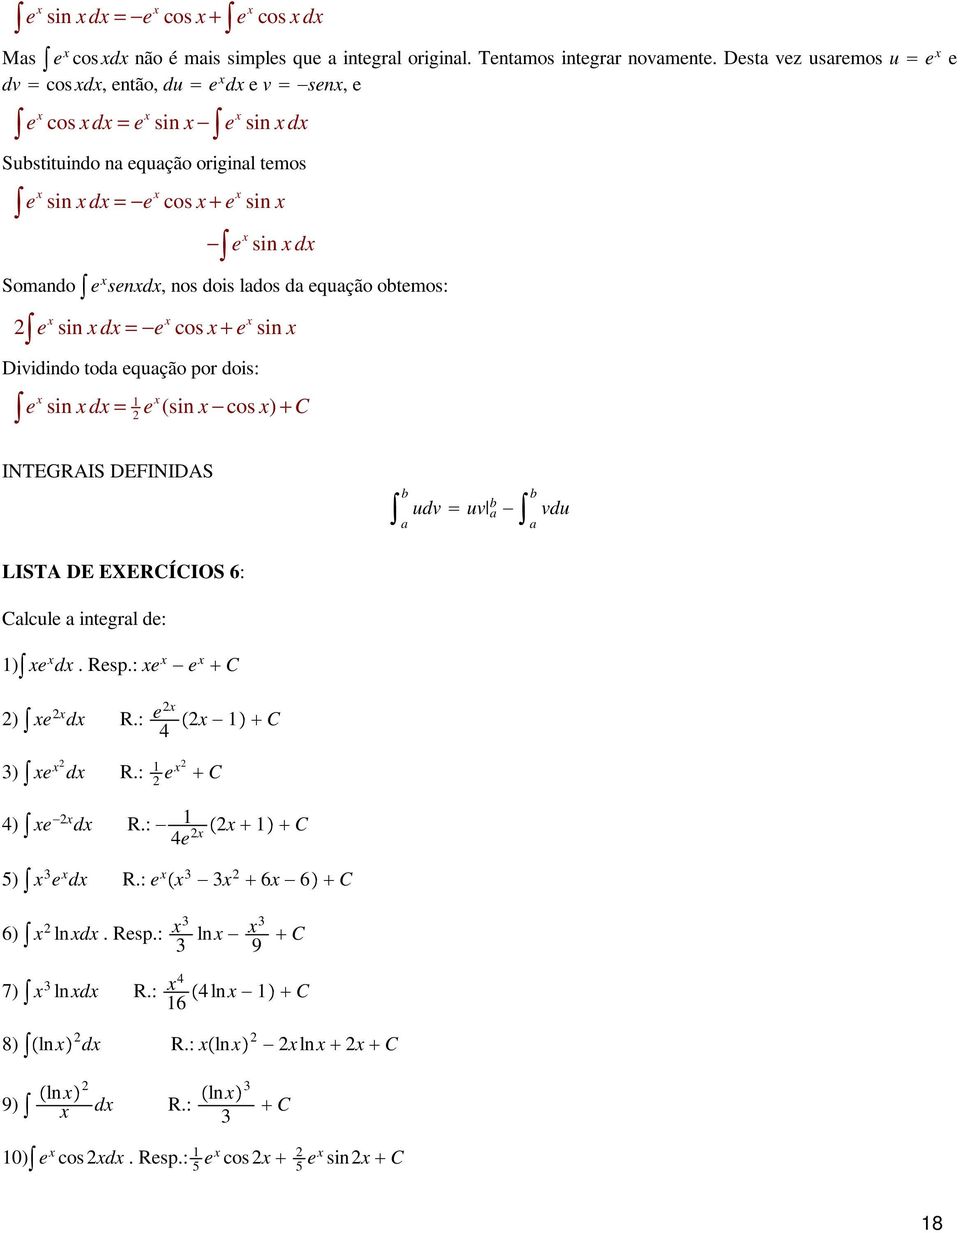 lados da equação oemos: e si = e cos + e si Dividido oda equação por dois: e si = e (si cos ) + C INTEGRAIS DEFINIDAS a udv uv a a vdu LISTA DE